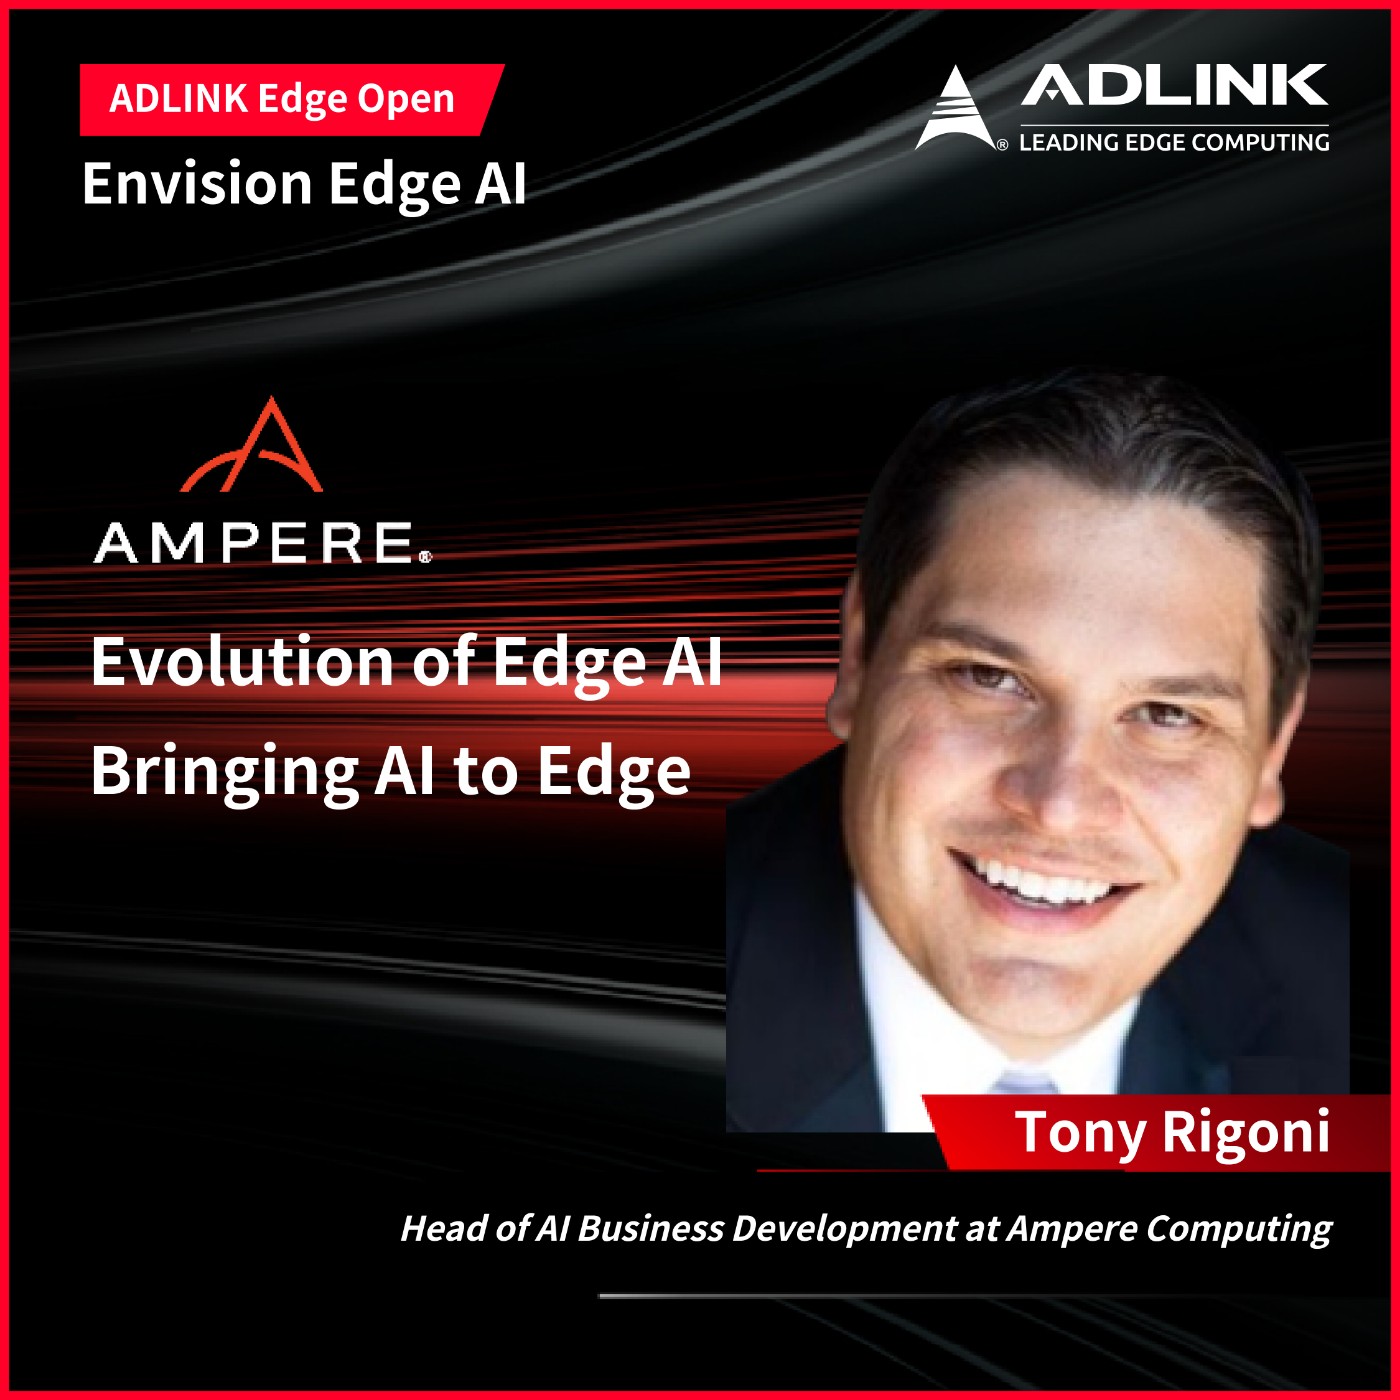 The evolution of Edge AI: Bringing AI to Edge